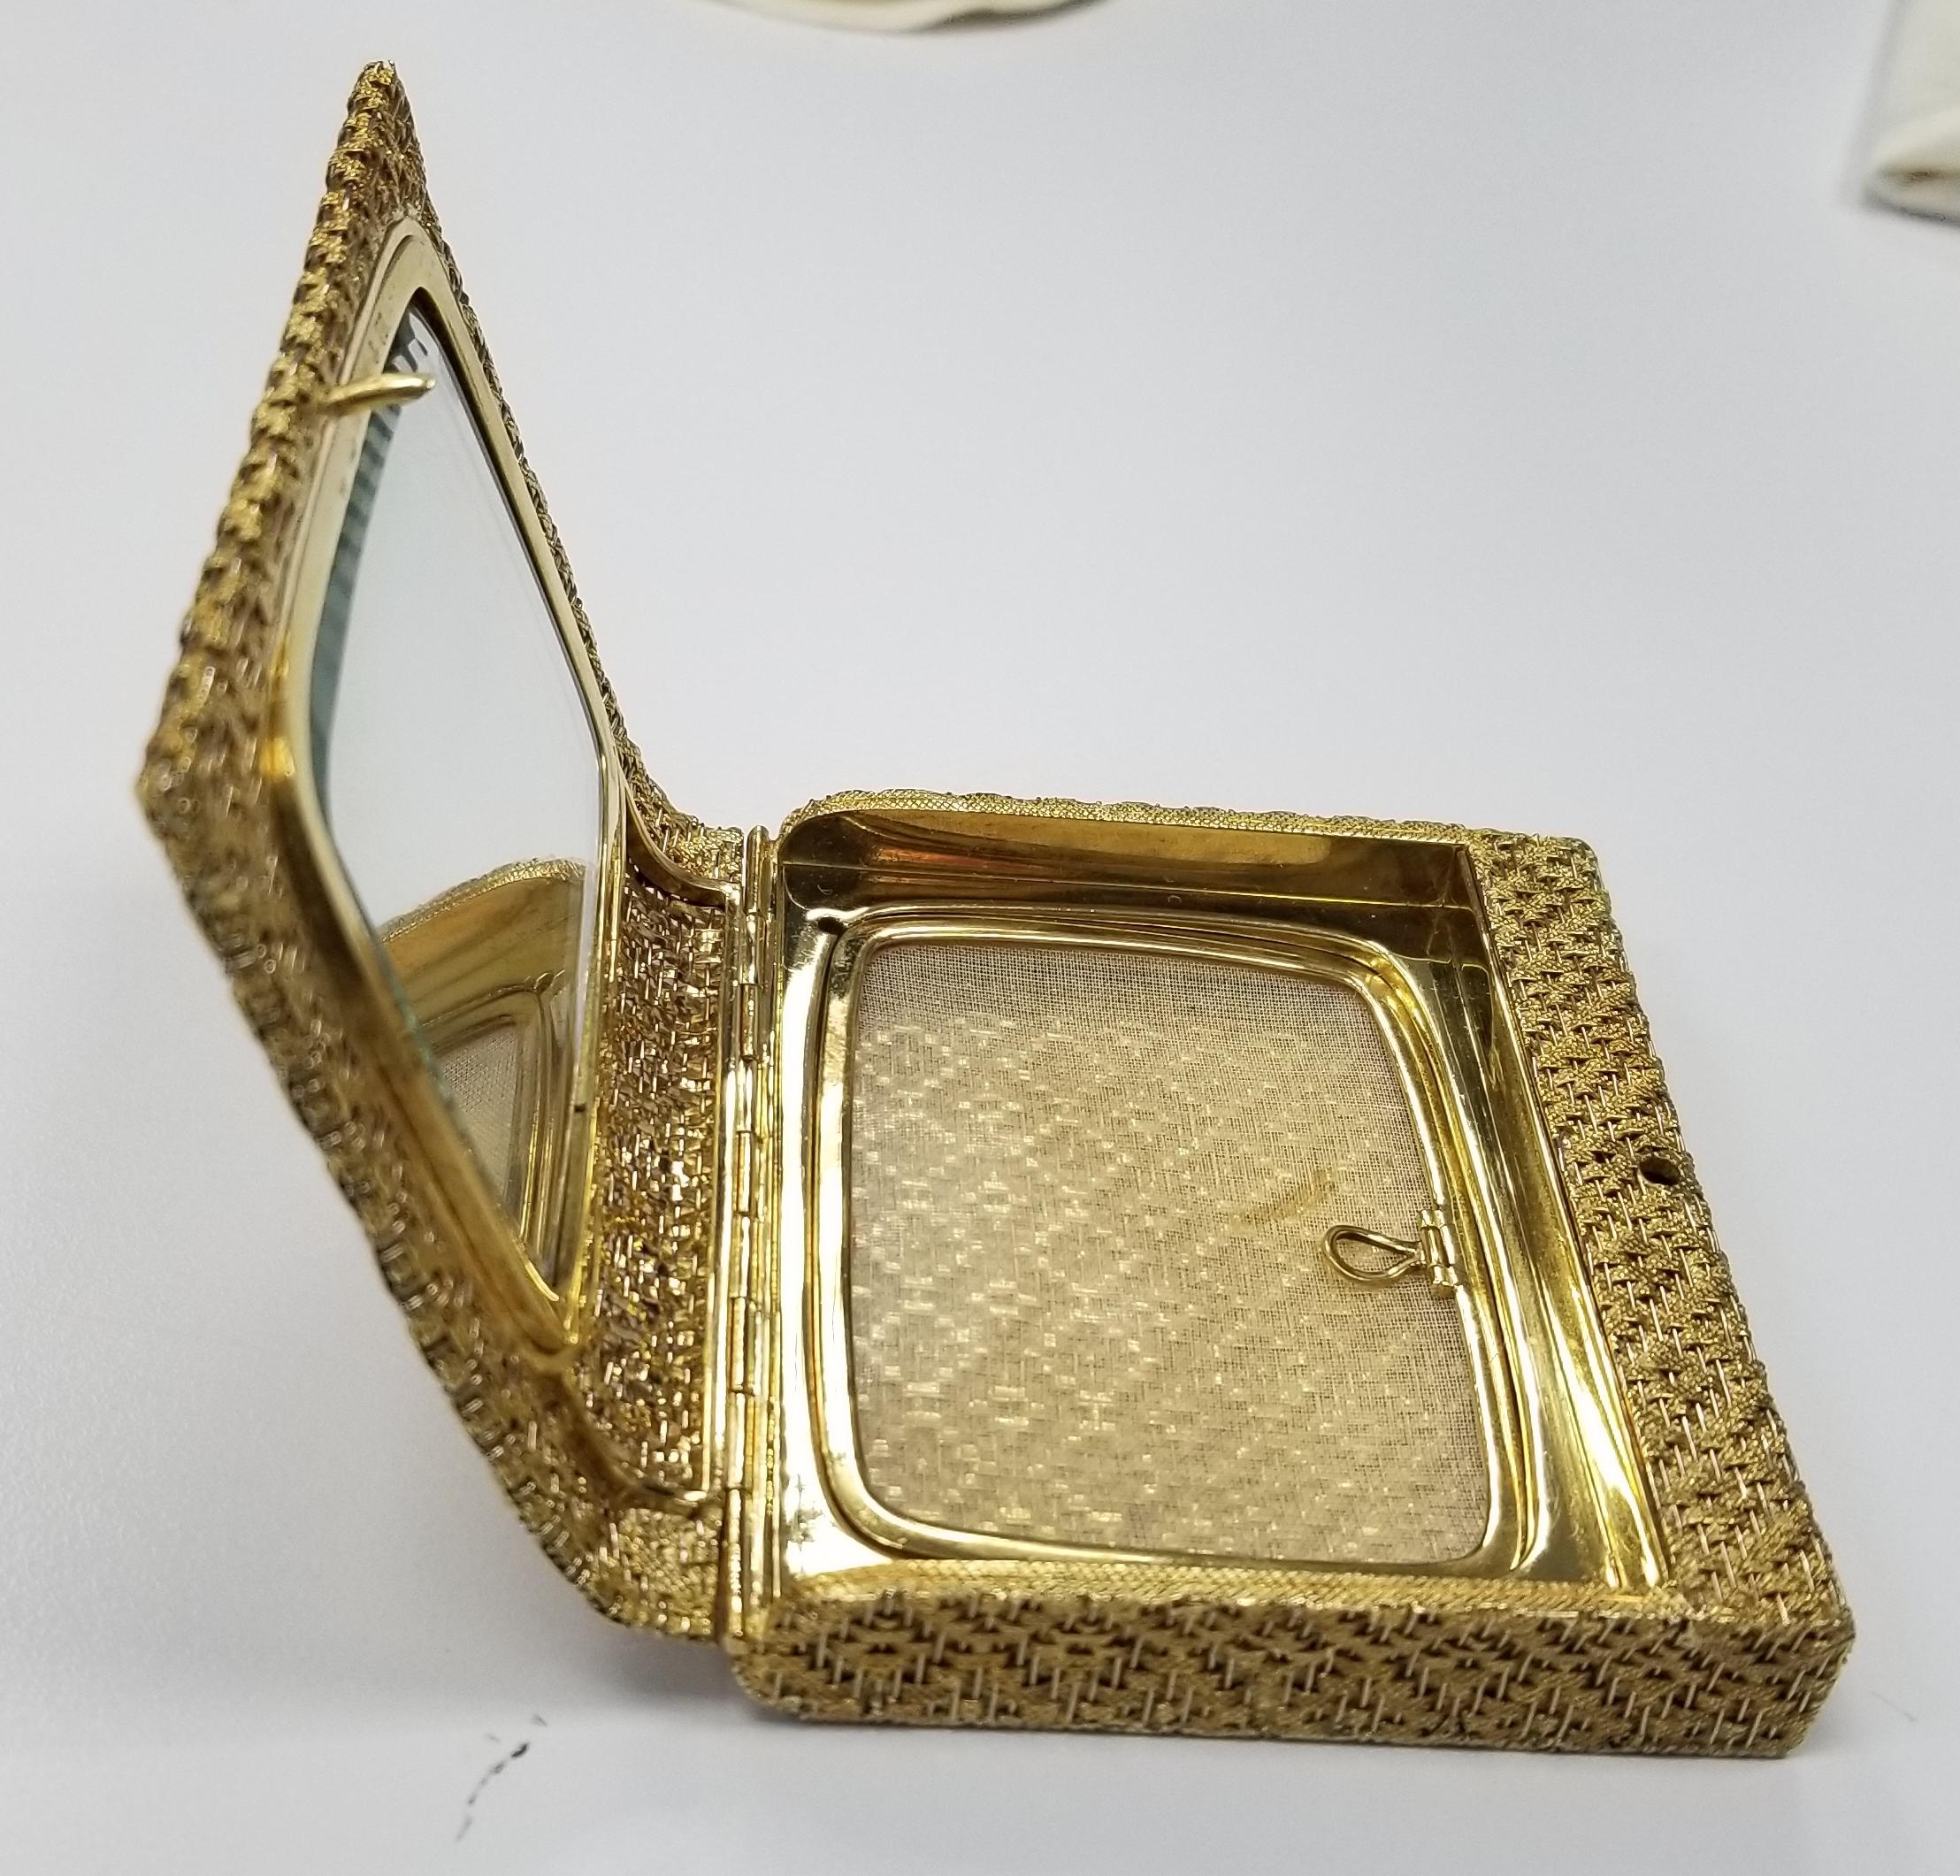 Ce poudrier Tiffany & Co. des années 1980 est de provenance italienne. Il est fabriqué en or jaune 18 carats massif, pèse 194 grammes et mesure 3,25